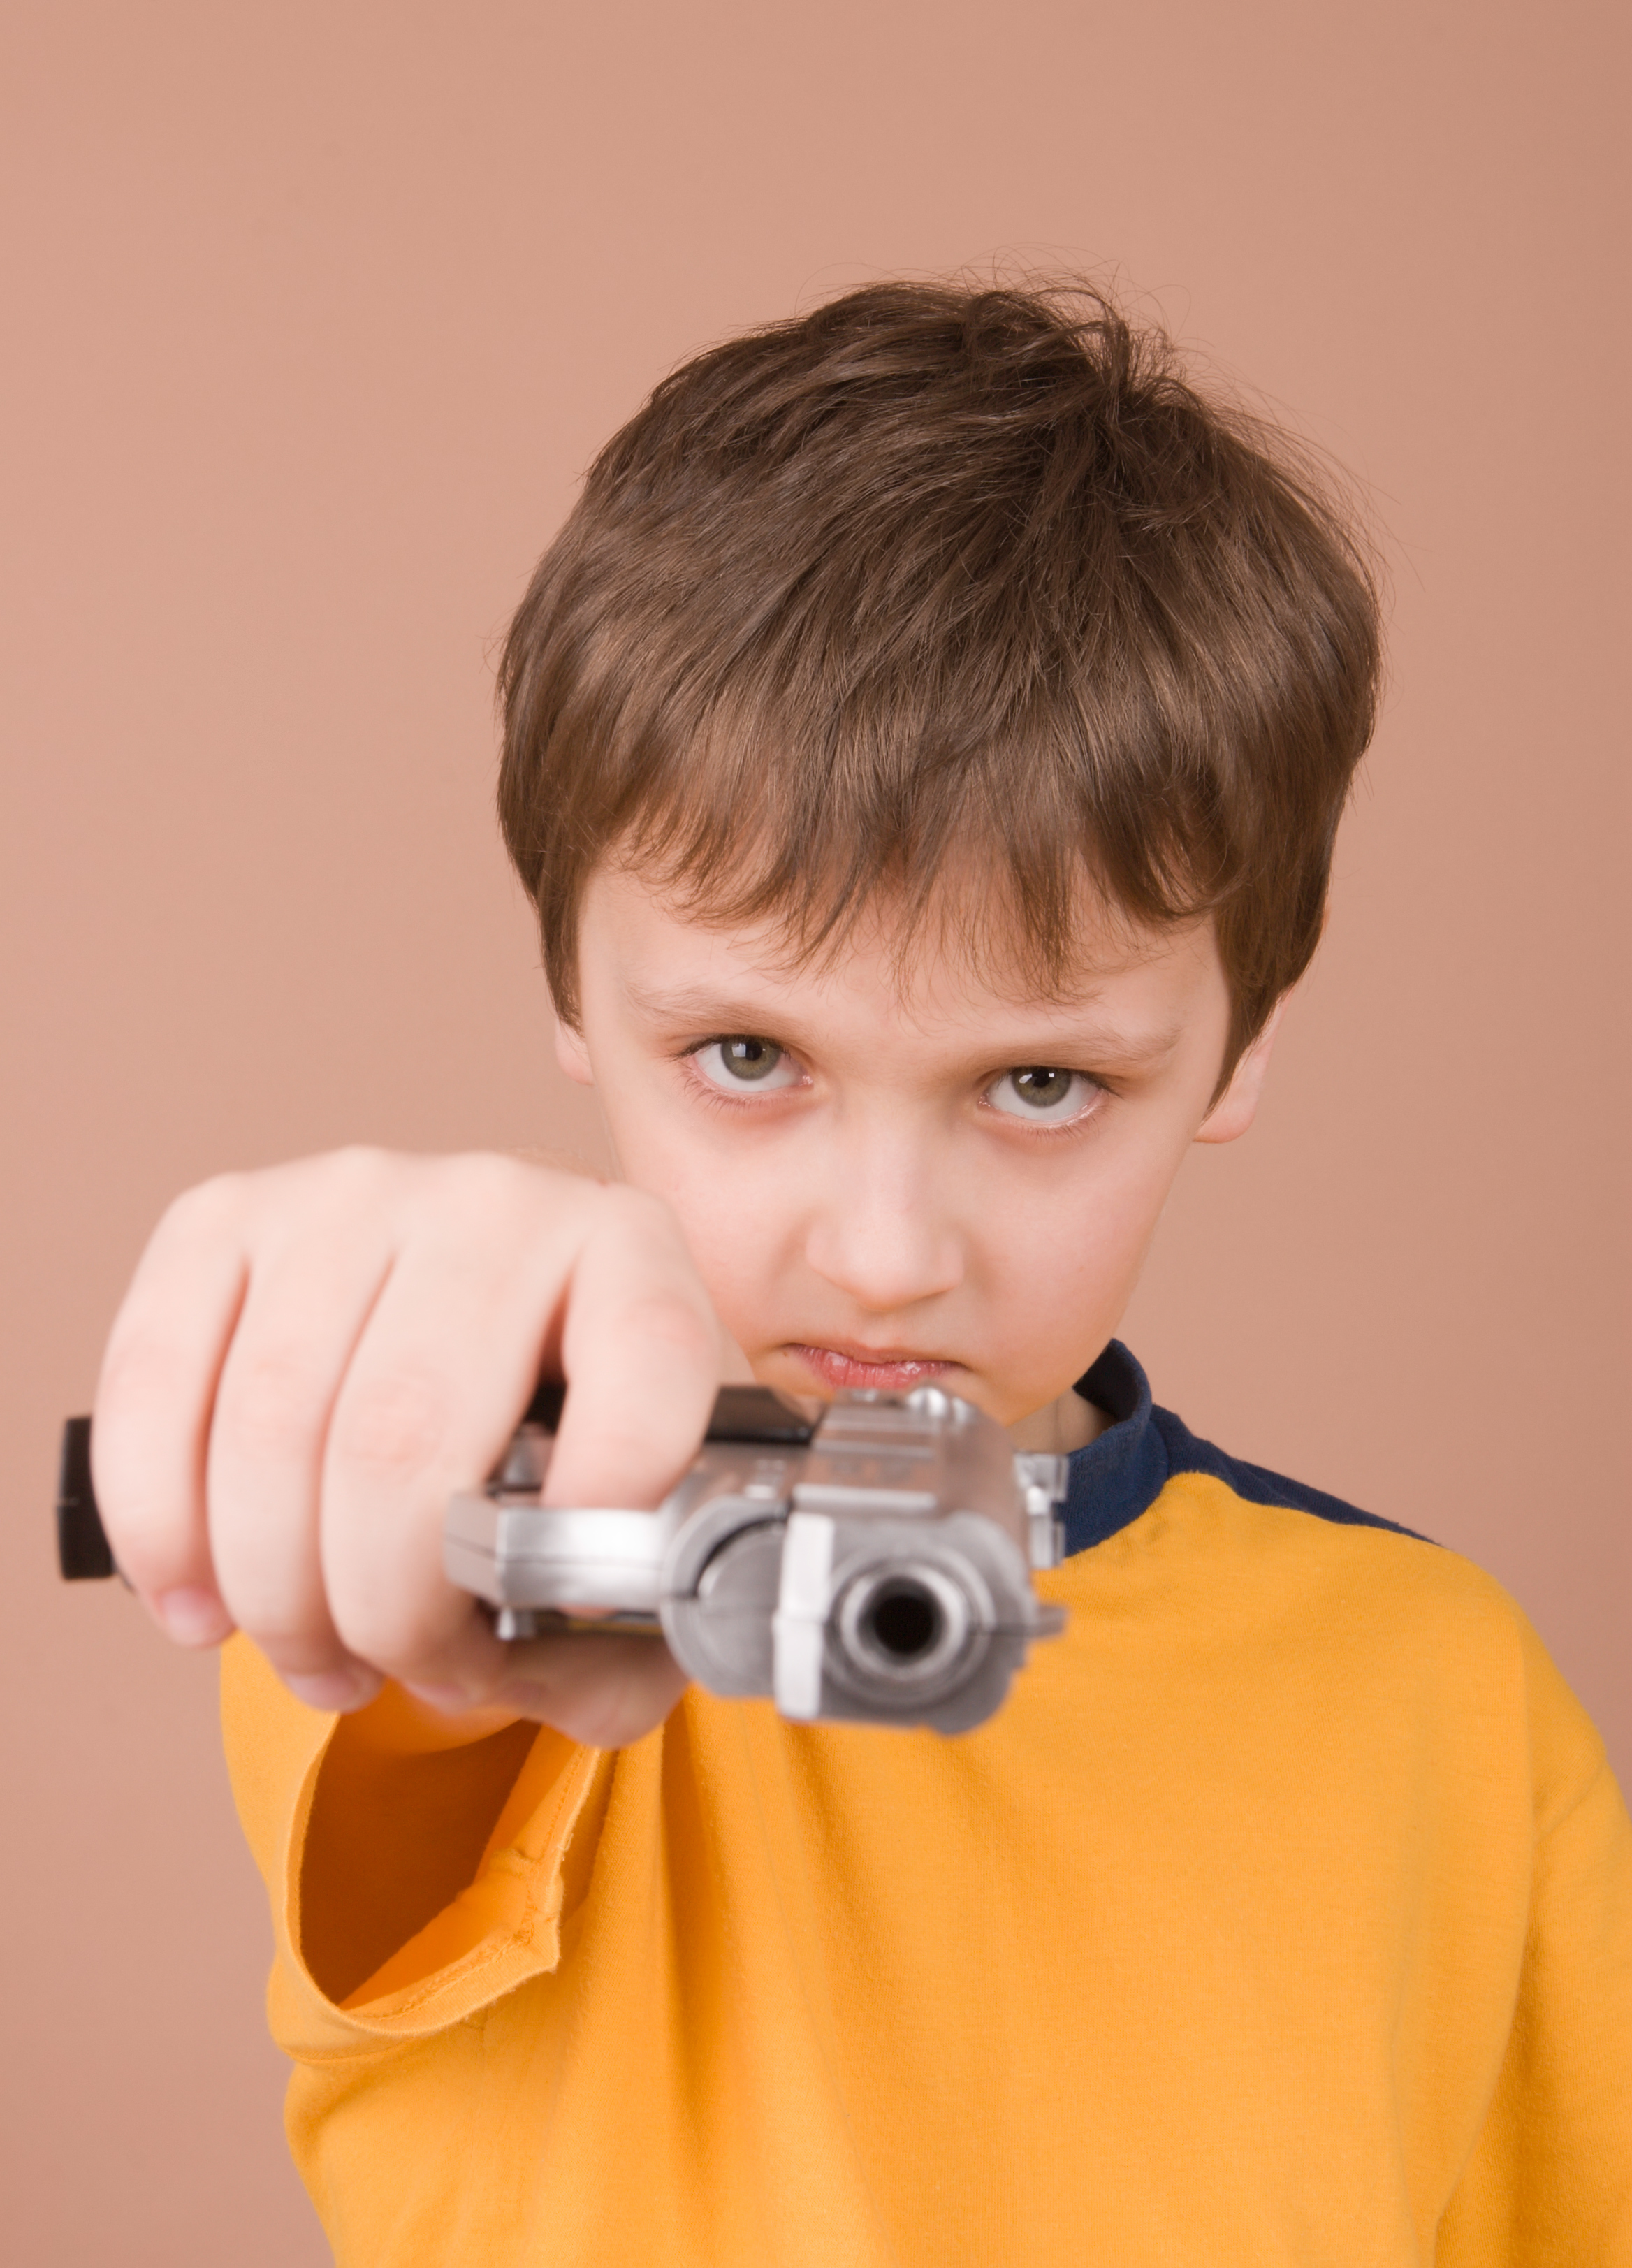 Bambino rom con la pistola: incita al razzismo